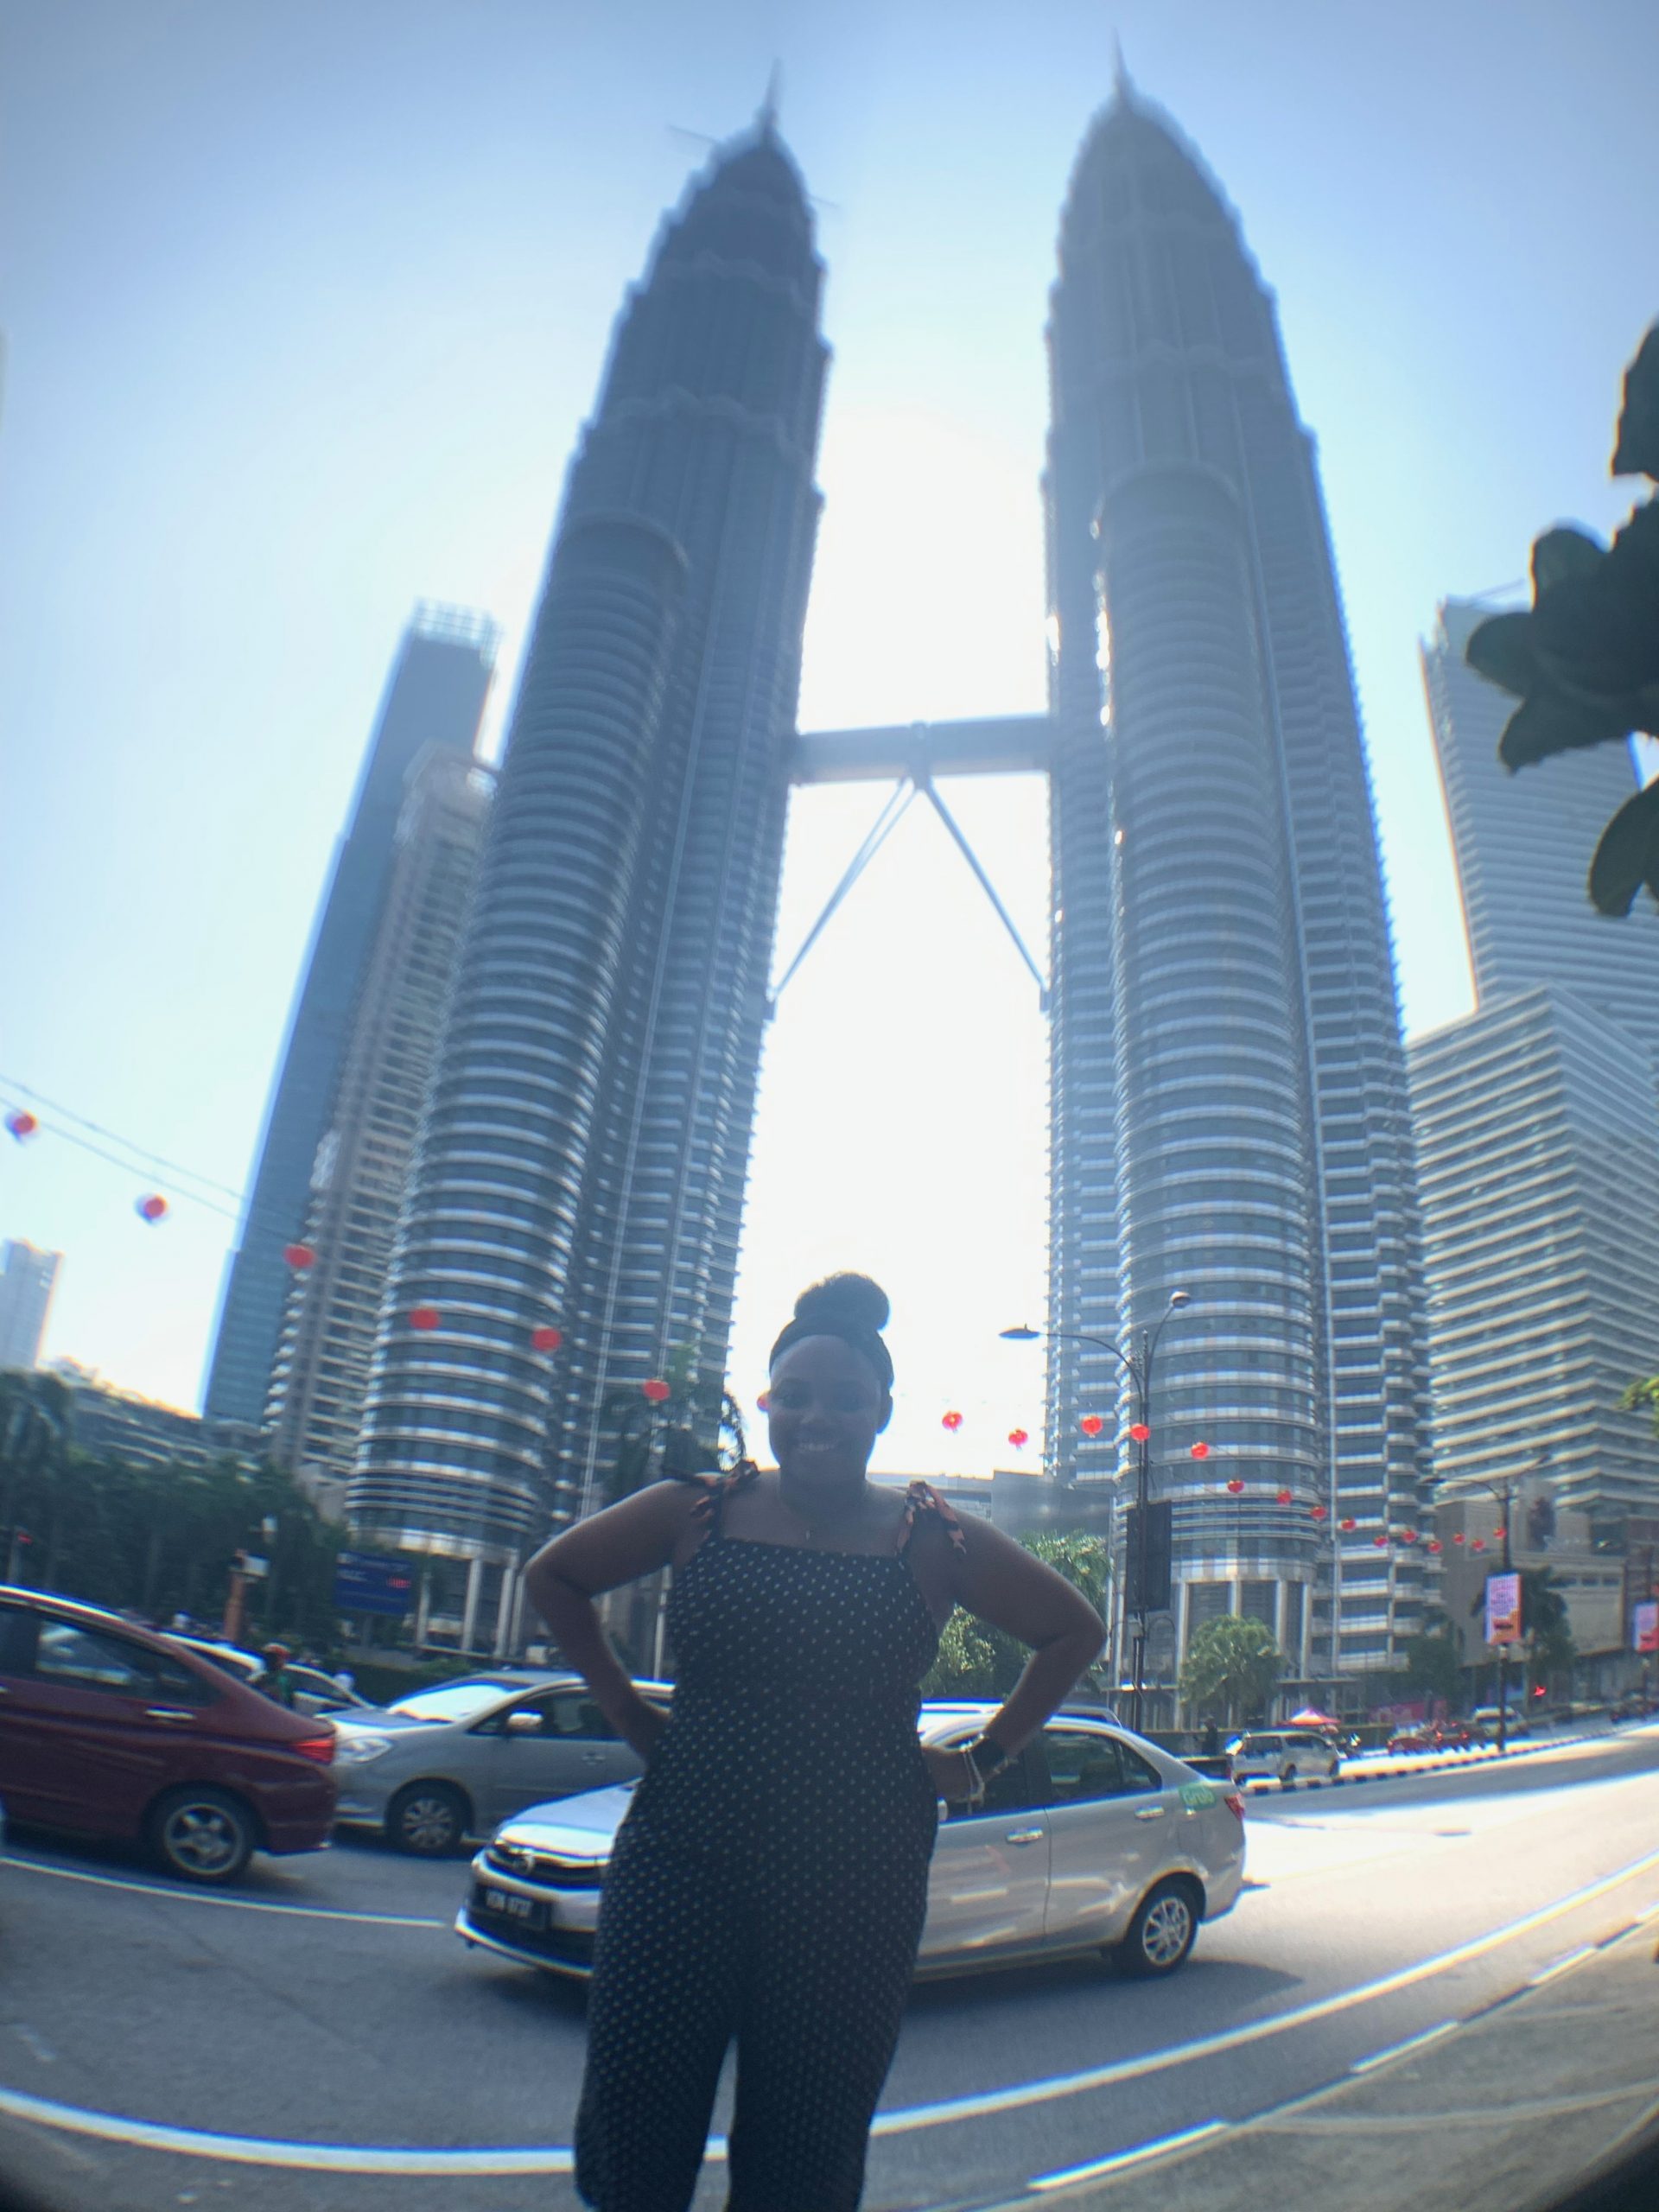 Malaysia 🇲🇾 Travel Vlog! Day 2 in Kuala Lumpur